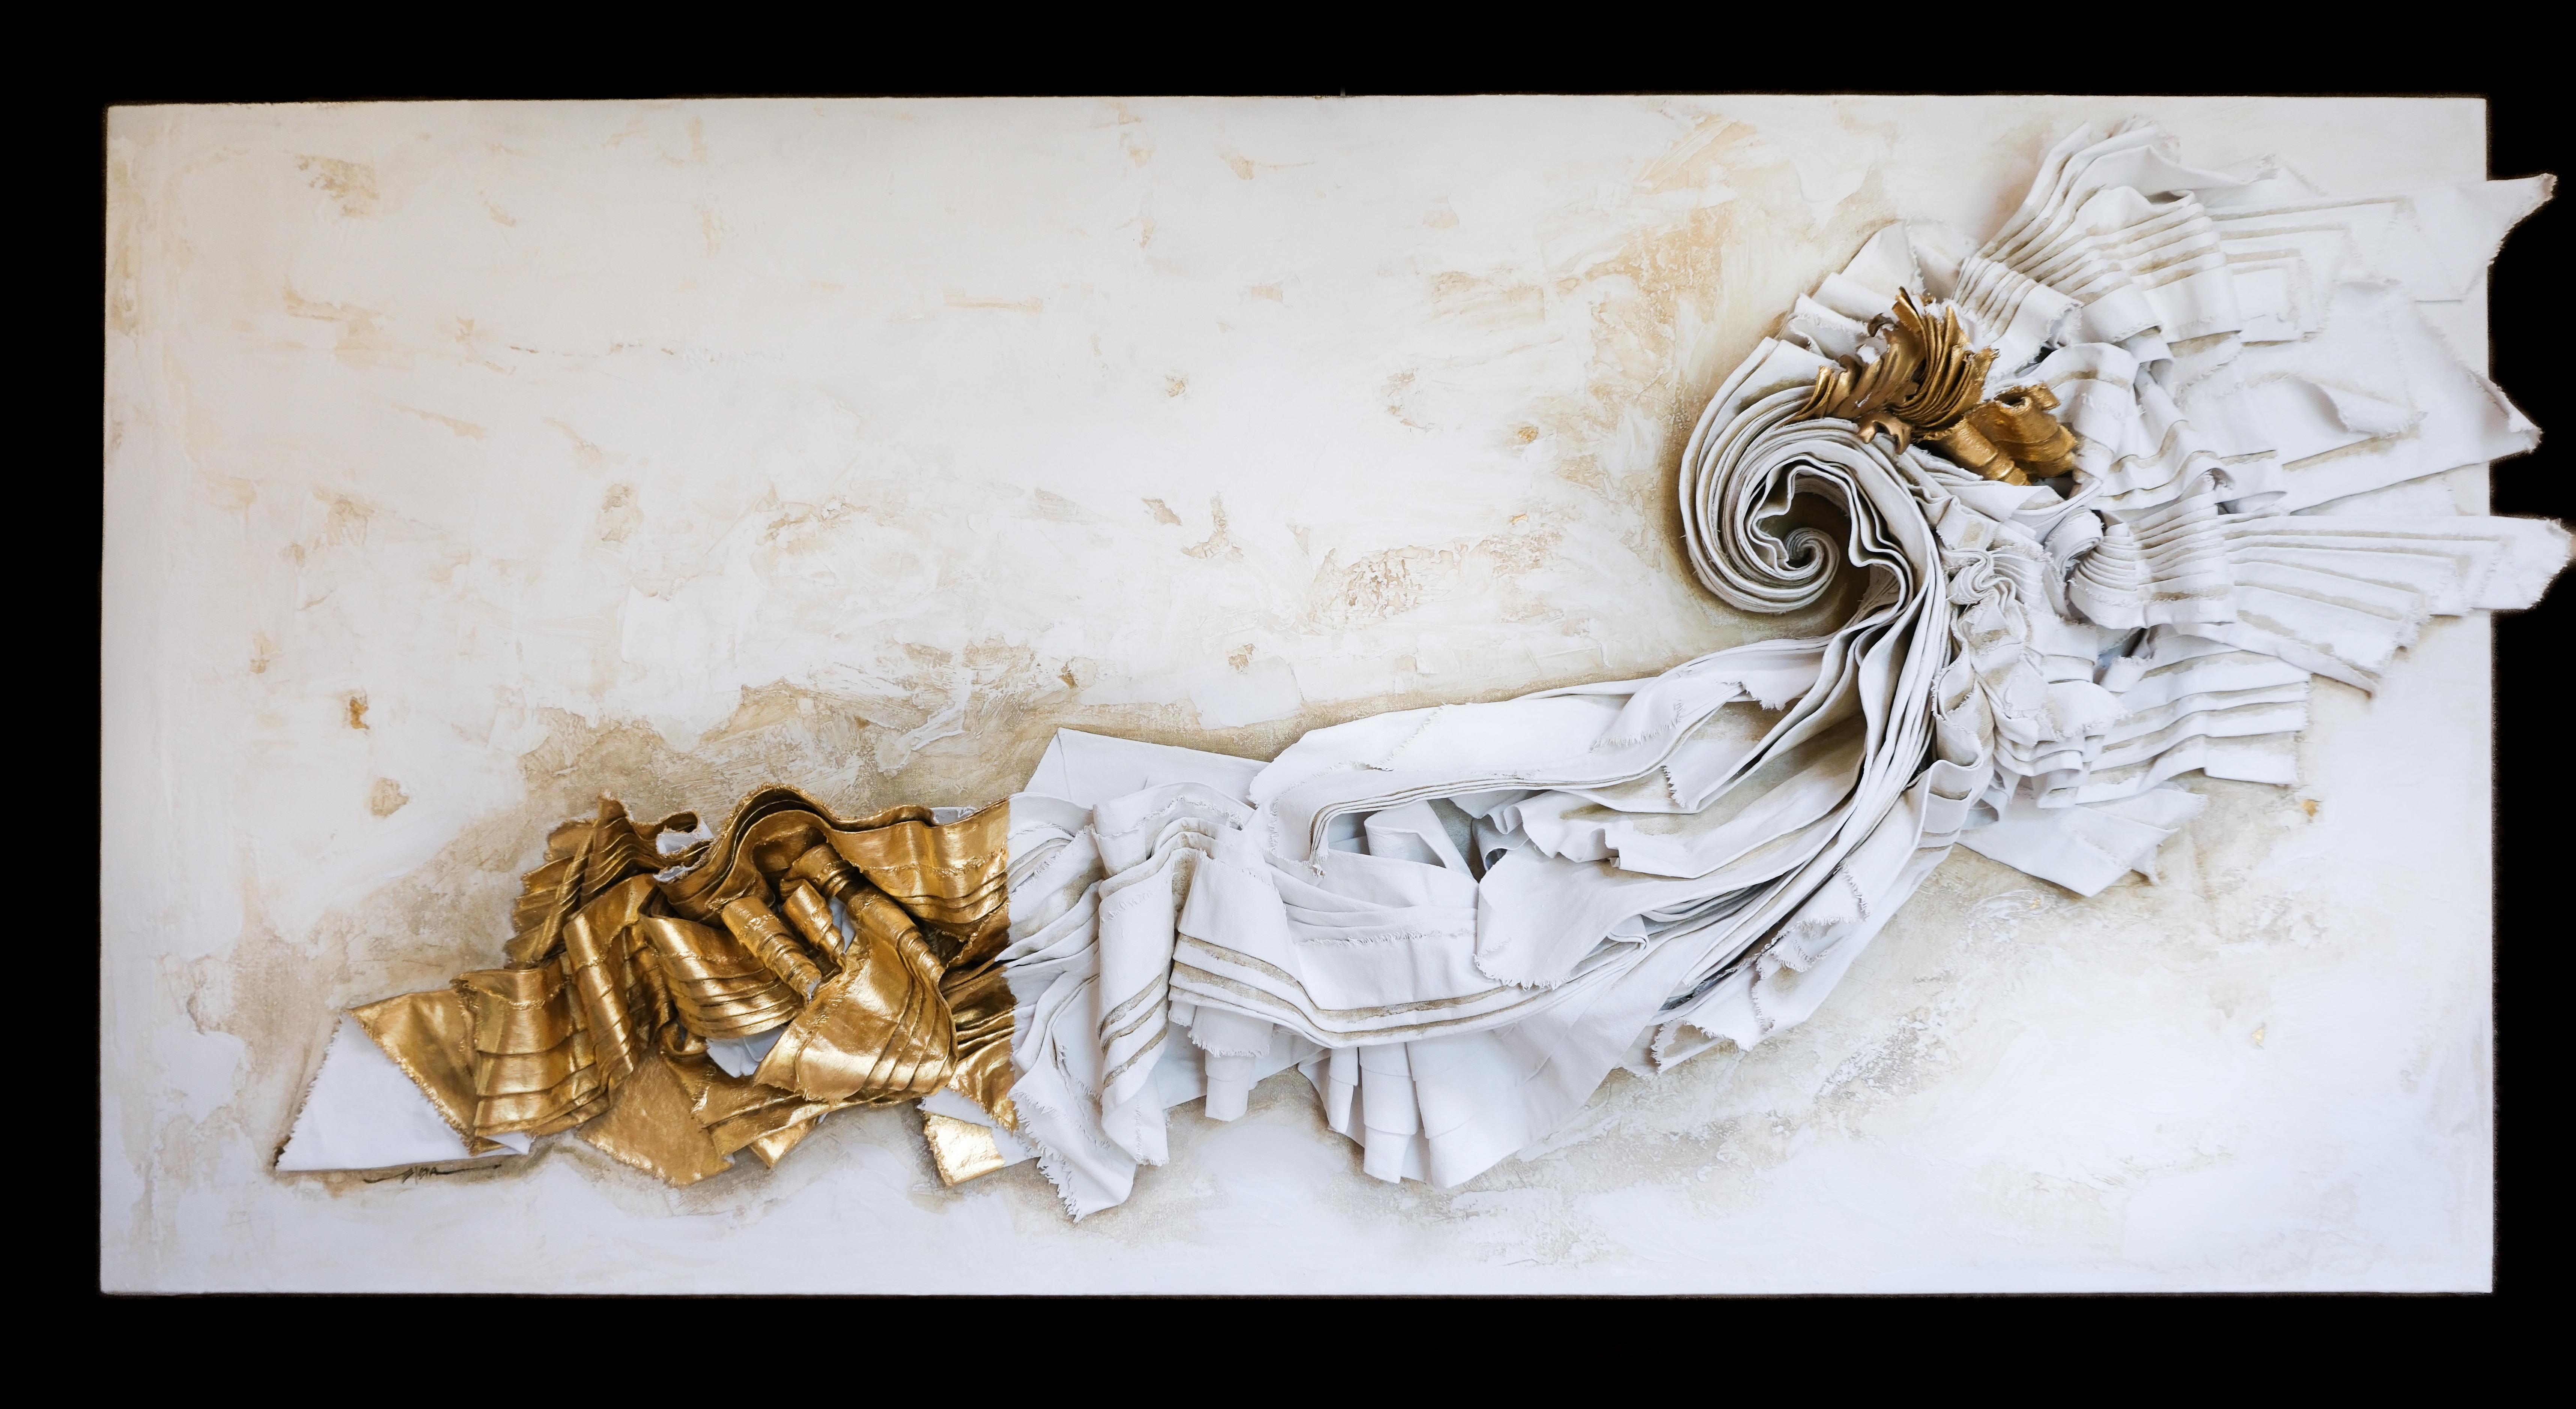 Toile sculpturale avec un fragment de bois doré italien du XVIIIe siècle, des saphirs bruts et des feuilles d'or 24k.

La toile sculptée est moulée avec du gesso, de la pâte de marbre, de la cire à dorer, de l'huile, de la terre verte et de la